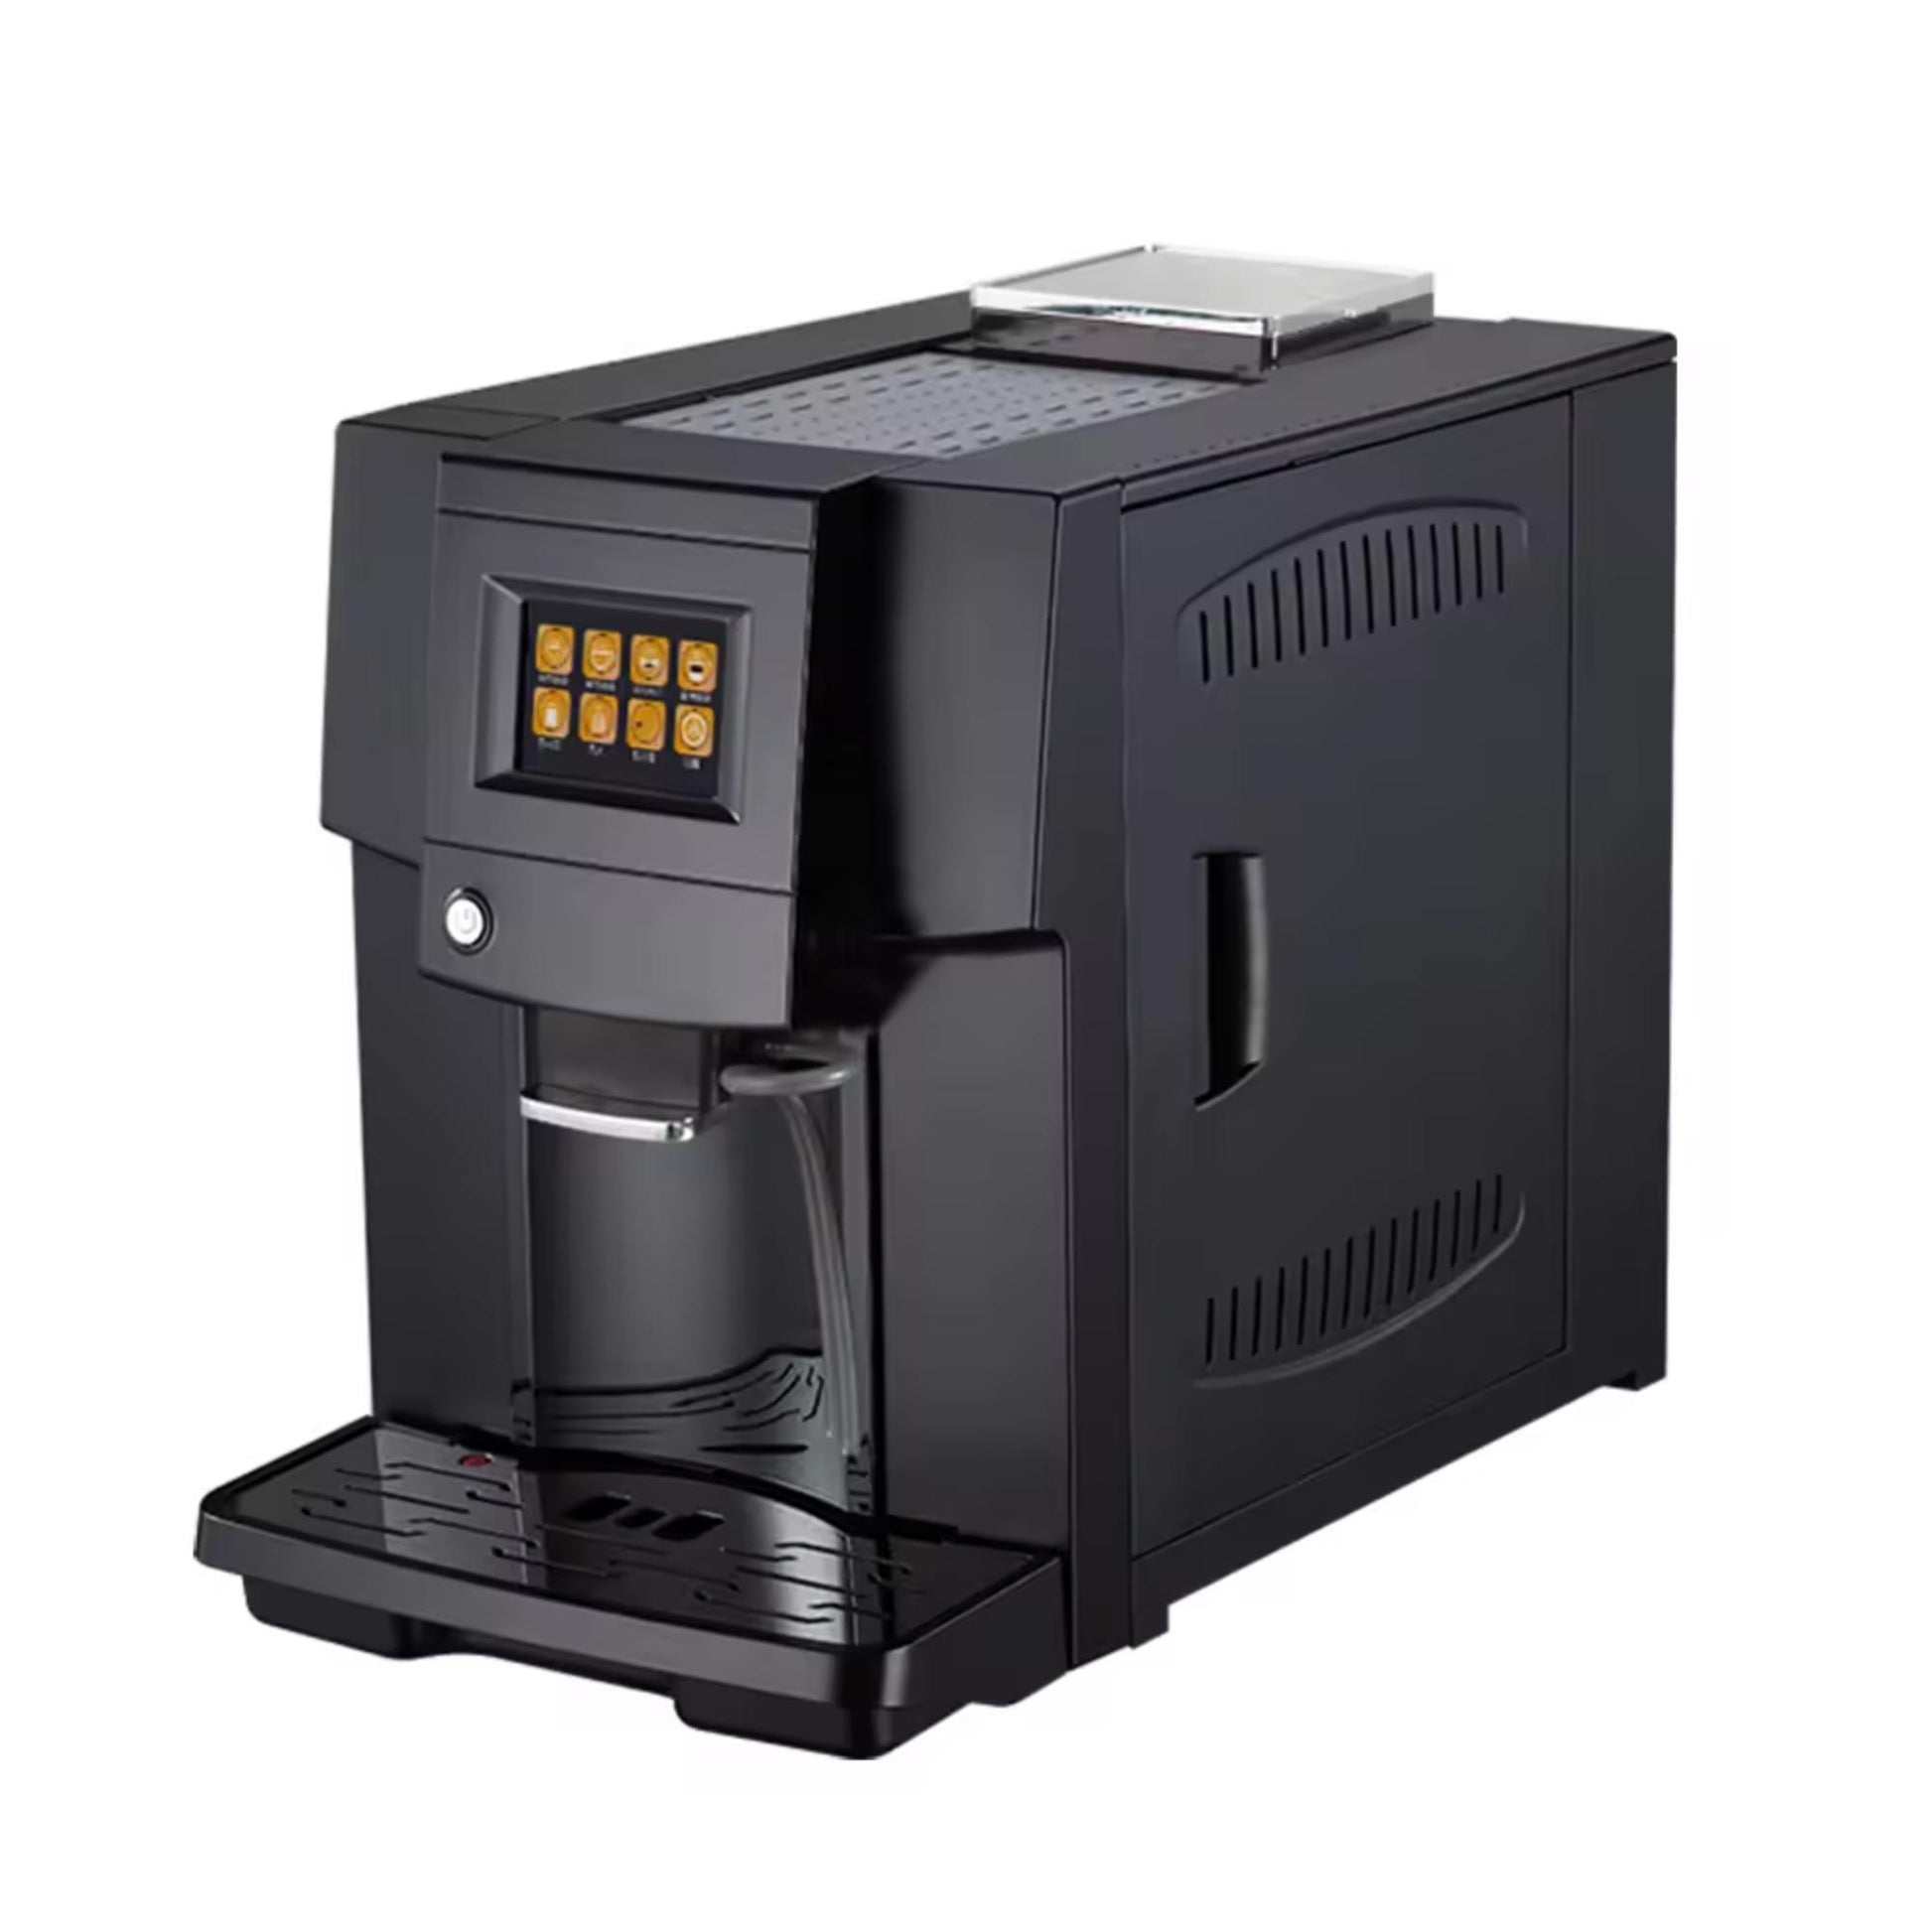 Colet Q006 Automatische Kaffeemaschine: One-Touch-Bedienung, doppeltes Heizsystem, selbstreinigend, 19-Bar ULKA Pumpe. | Blue Chilli Electronics.